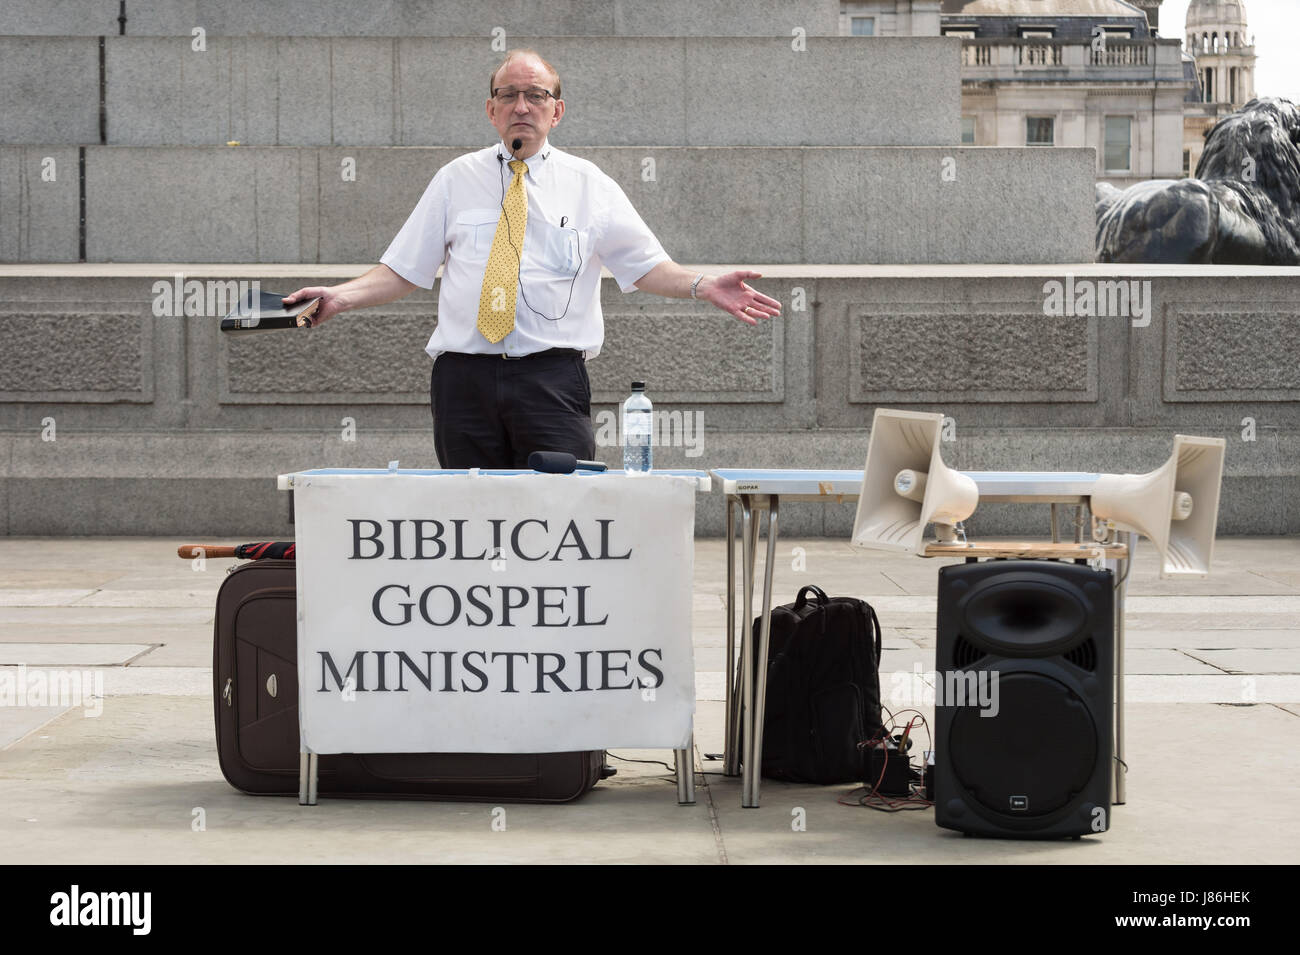 Ein Christian Straße Prediger von biblischen Evangelium Ministerien spricht am Trafalgar Square in London, UK. Stockfoto